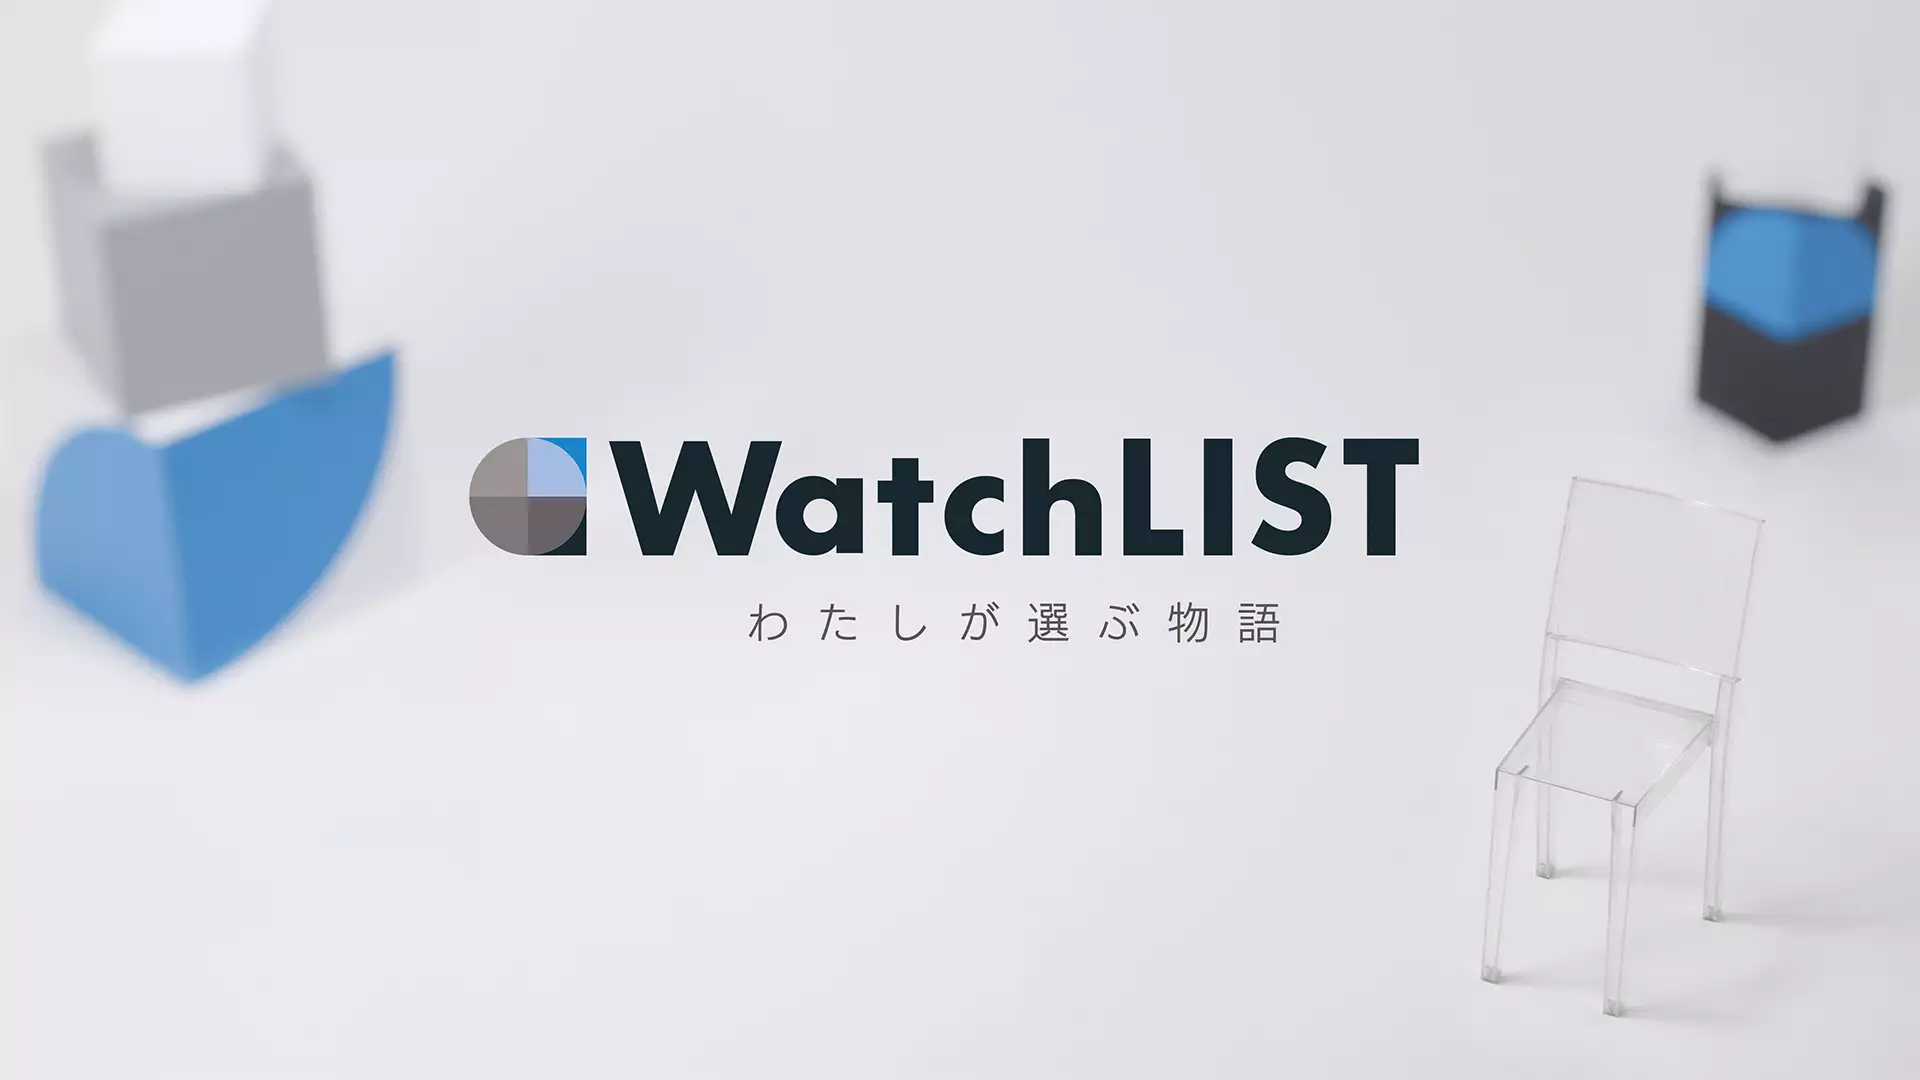 WatchLIST －わたしが選ぶ物語－